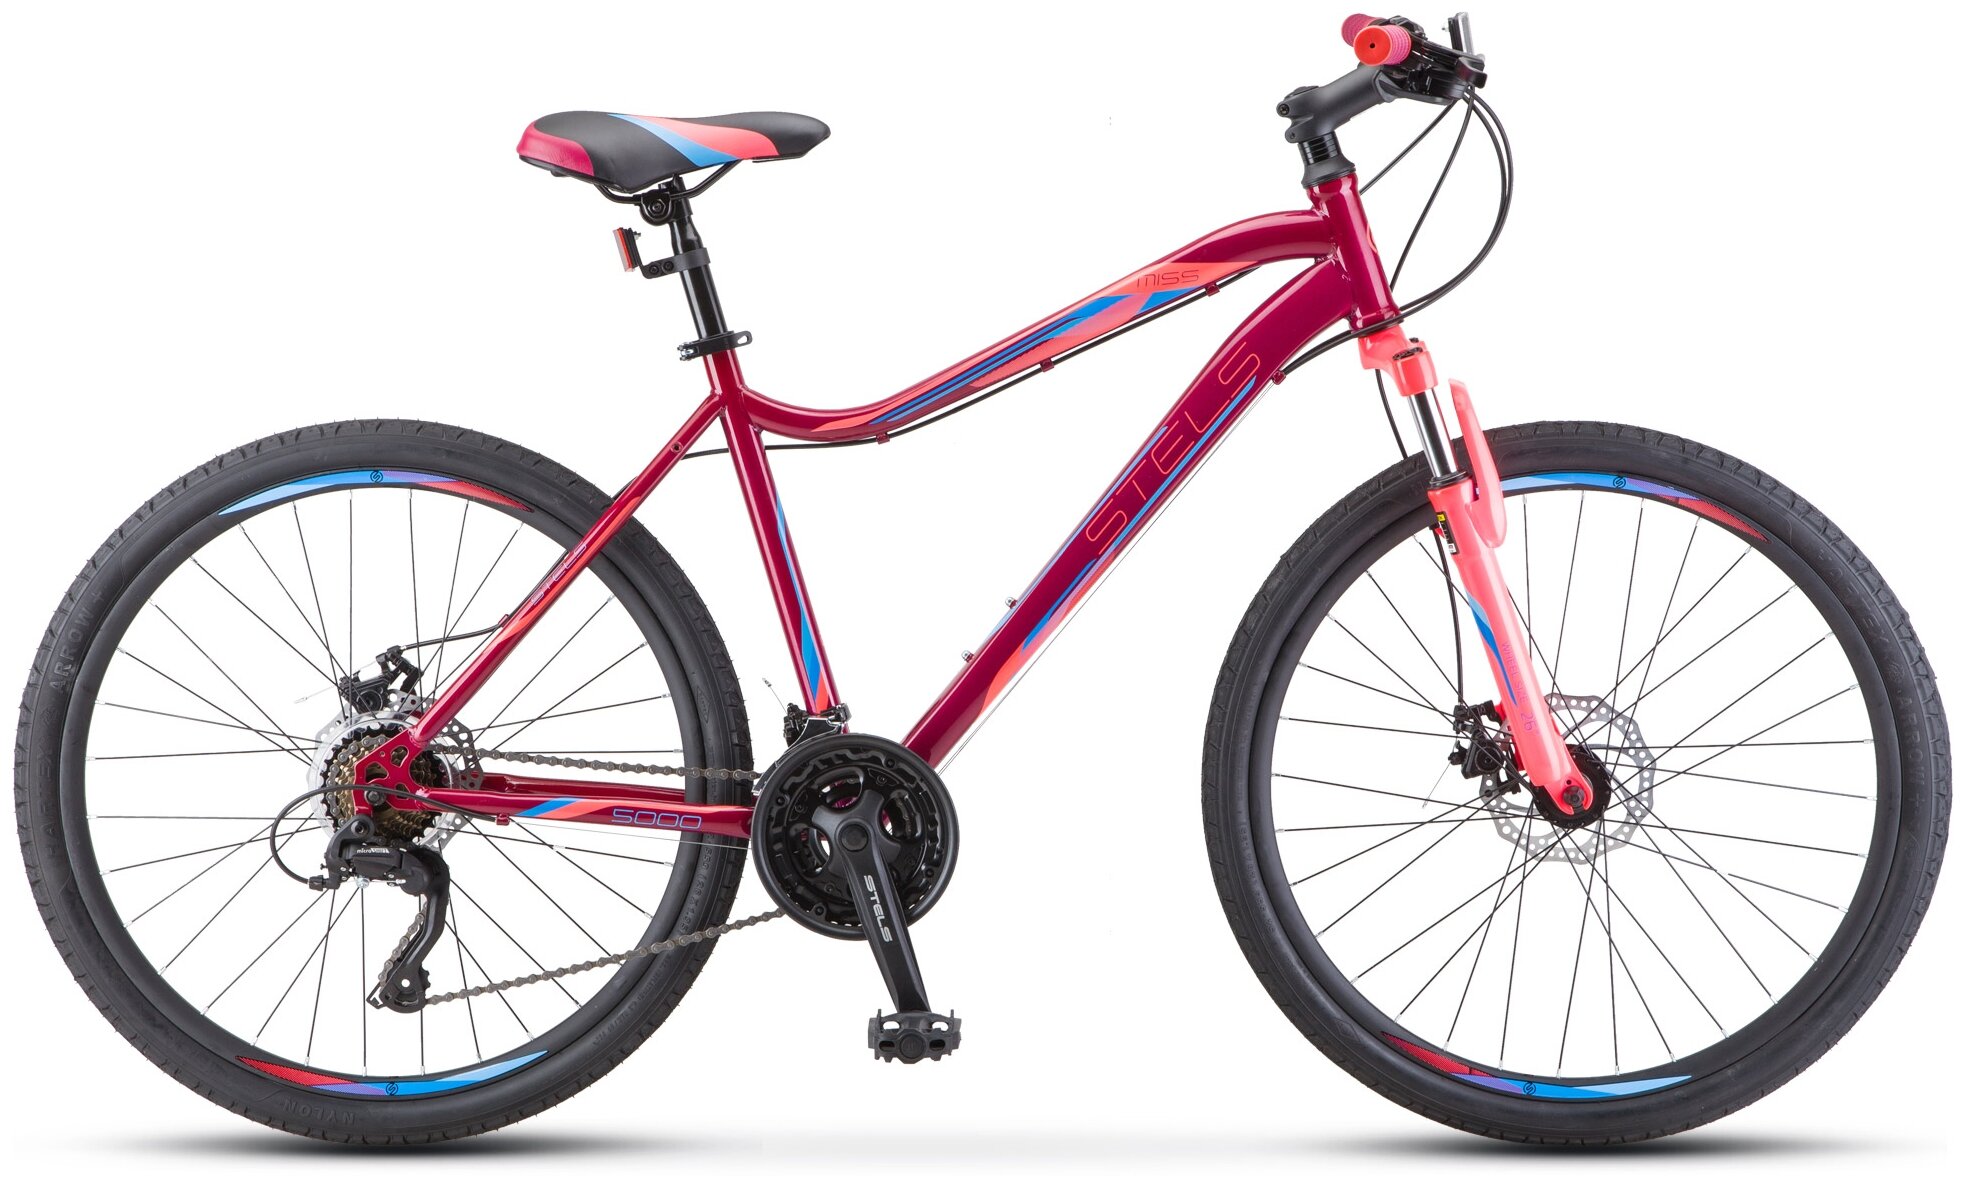 Горный (MTB) велосипед STELS Miss 5000 MD K010 (2021) вишнево-розовый 18" (требует финальной сборки)